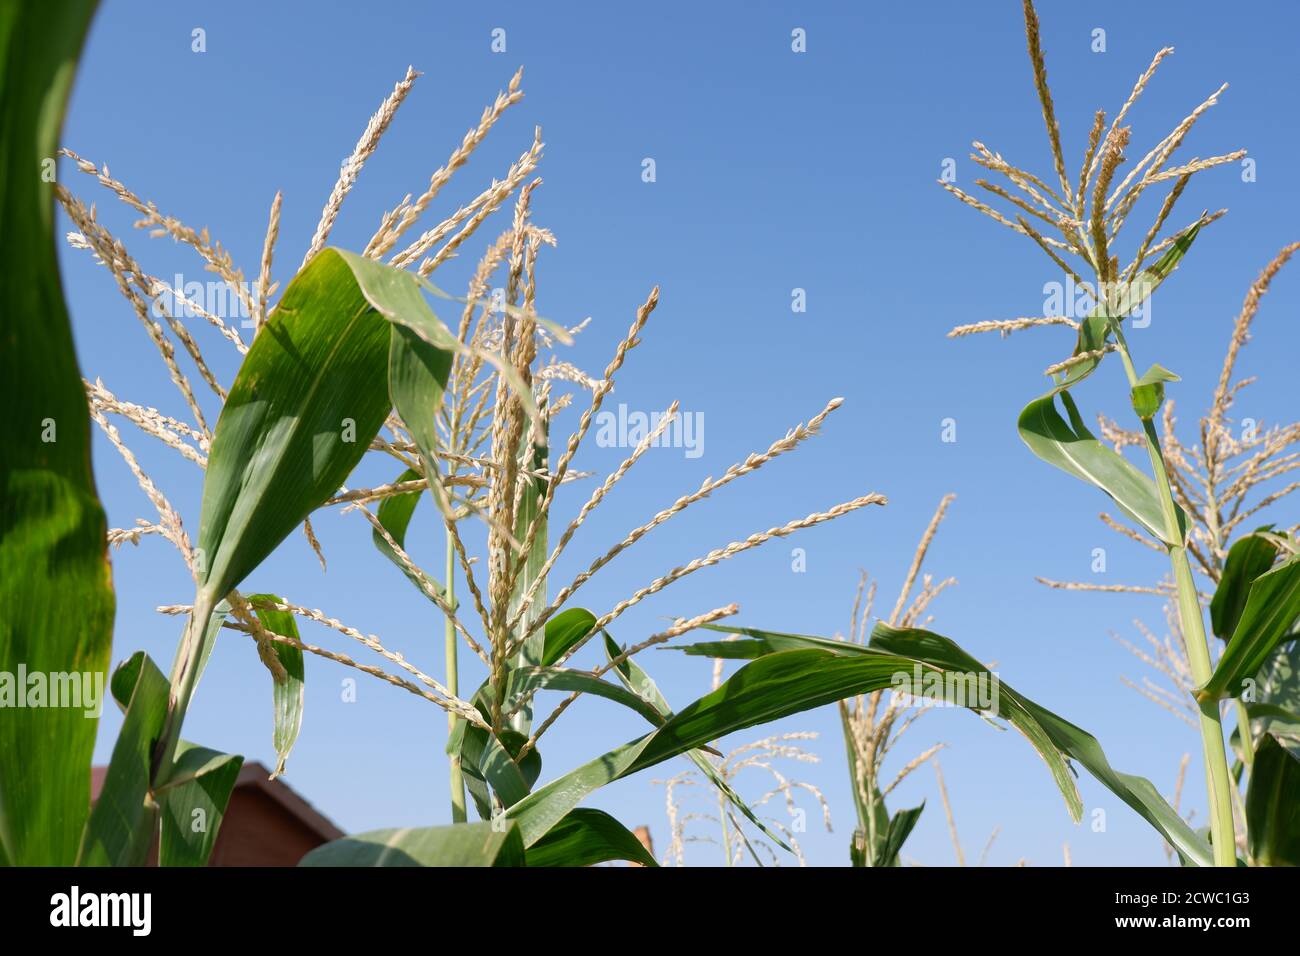 Heads of Corn plants over horizon Stock Photo